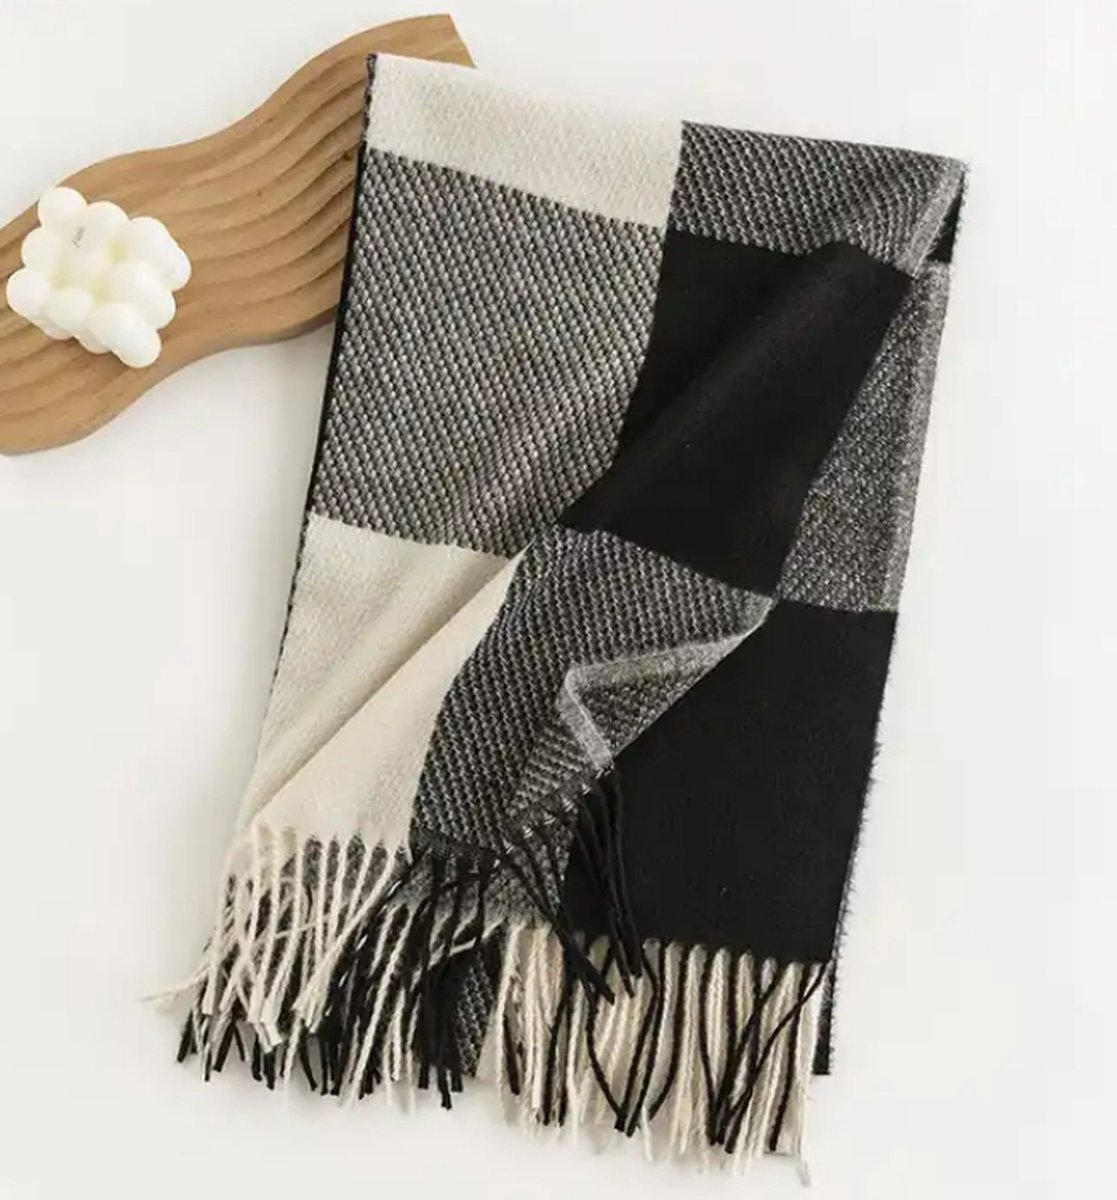 Sjaal zwart/wit / super zacht / 206 cm lang en 65 cm breed / verkrijgbaar in 10 verschillende kleuren